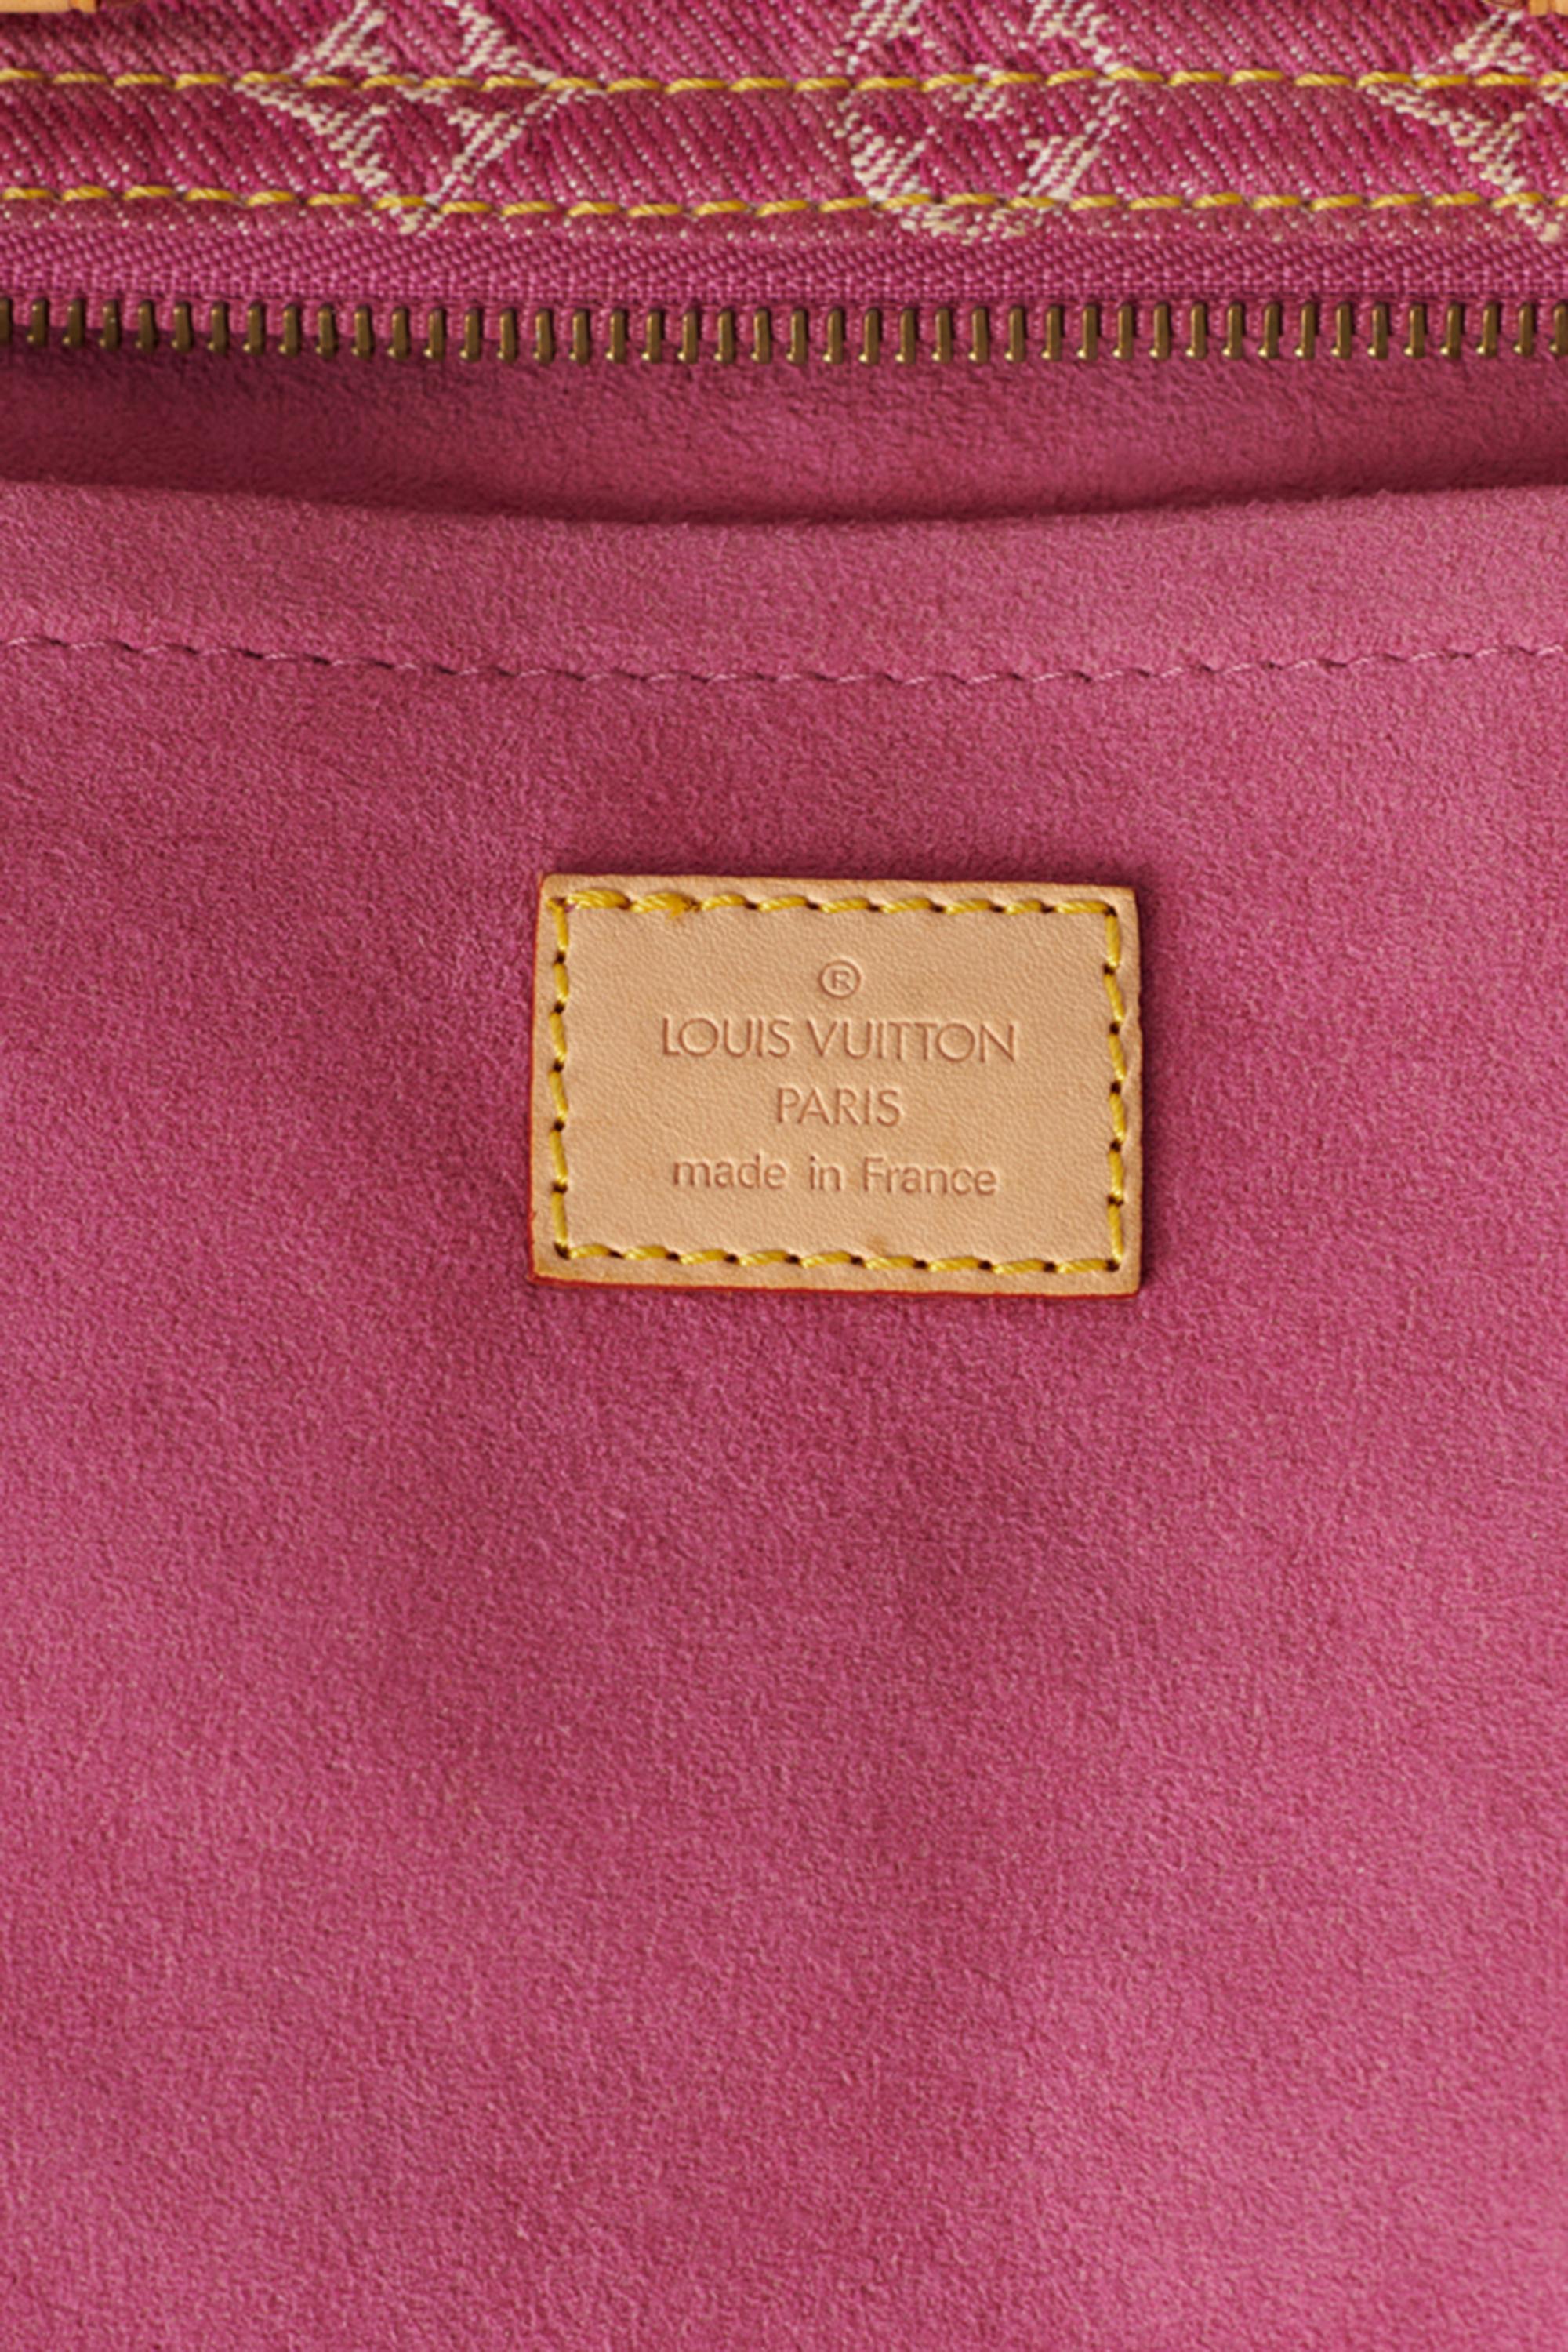 Louis Vuitton 2006 Pink Denim Monogram Speedy Bag & Scarf For Sale 2